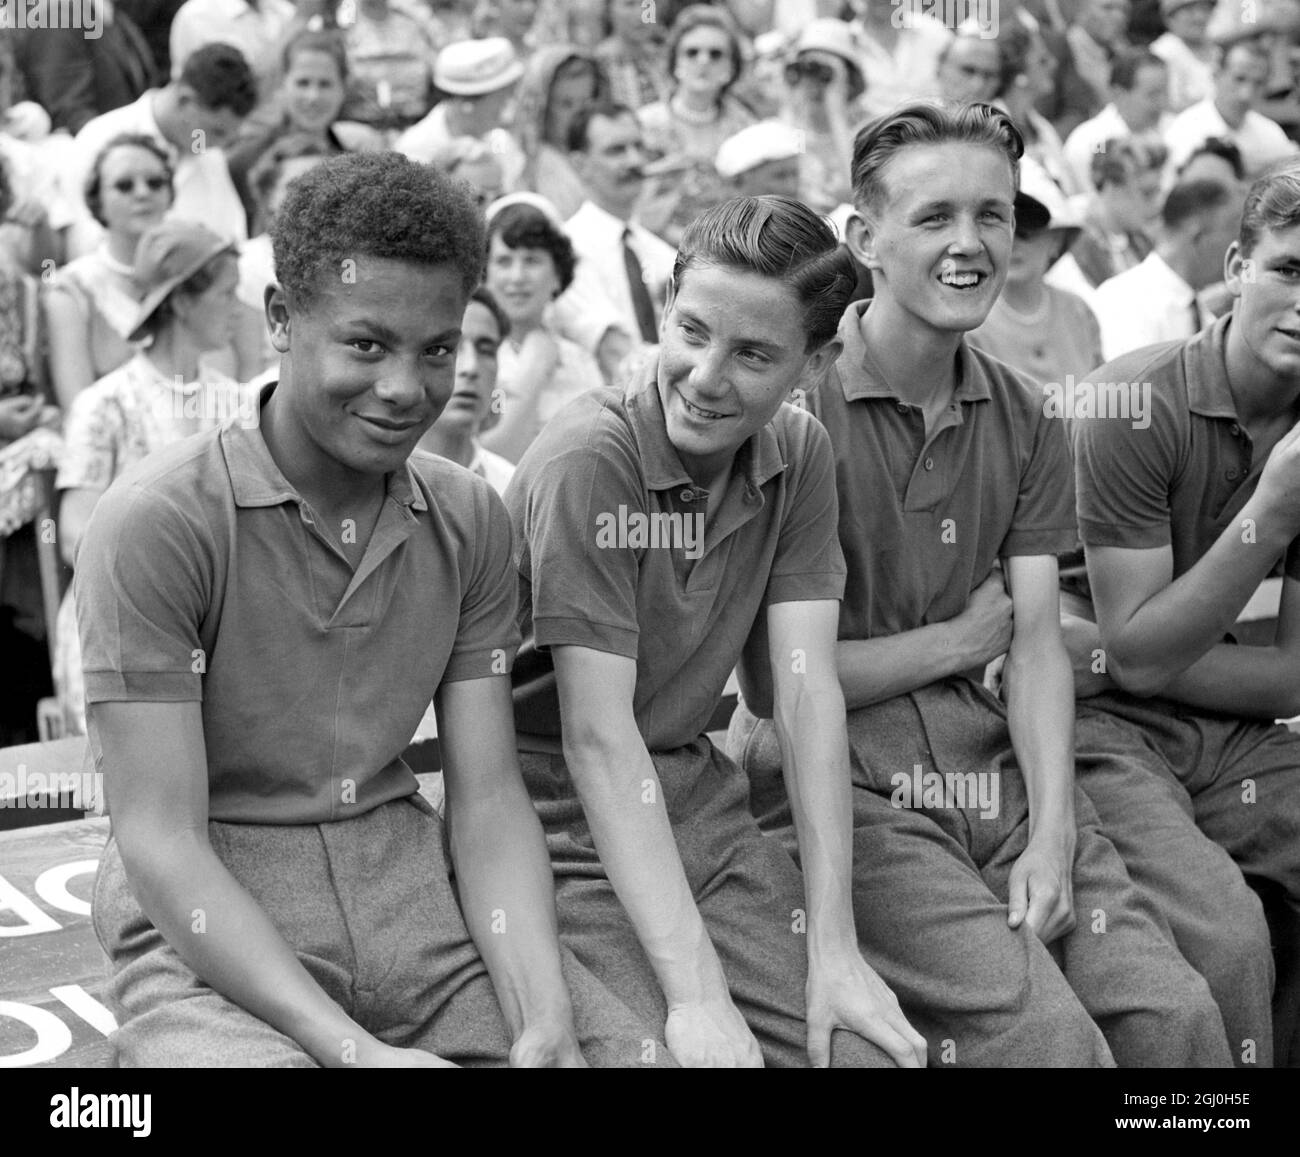 Wimbledon 1957. Jimmy Dean, ein 15-jähriger, farbiger Junge aus Dr. Barnados Heim, war heute im Halbfinalspiel für Althea Gibson Ballknabe. Jimmy wird mit anderen Ballknaben gesehen. Stockfoto